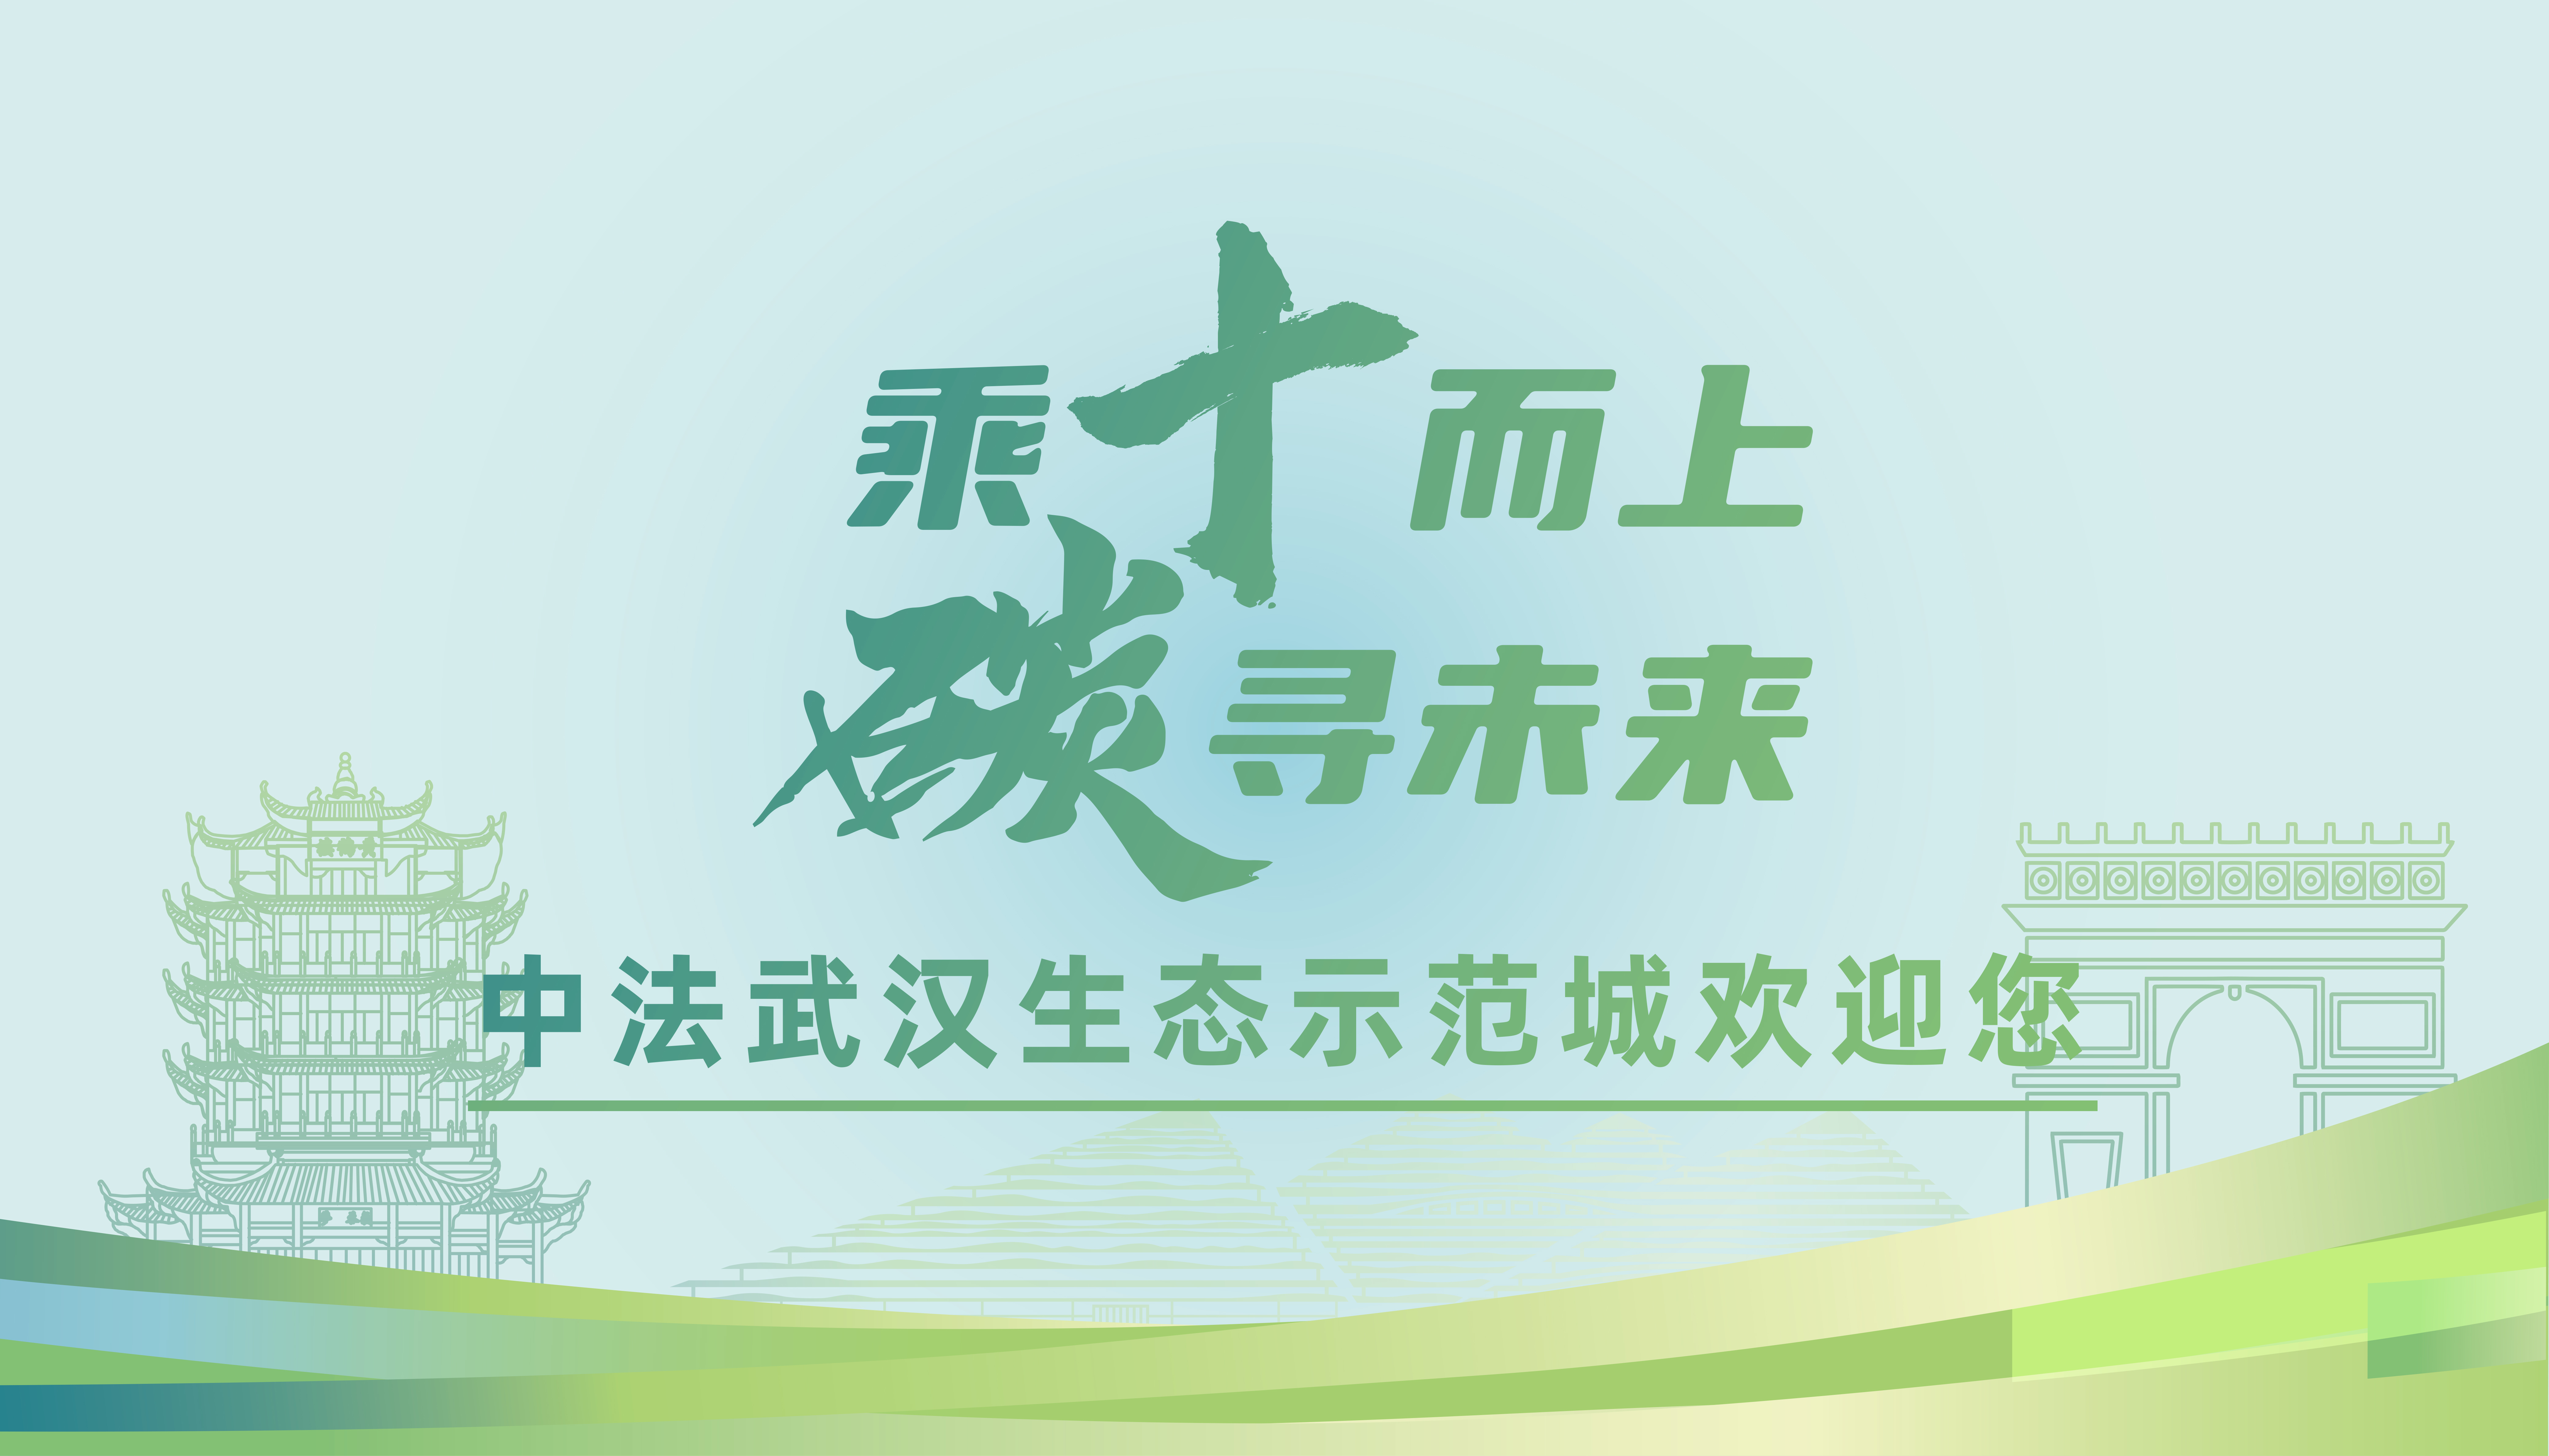 中法武汉生态示范城签约十周年暨第七届中法论坛将在汉举行